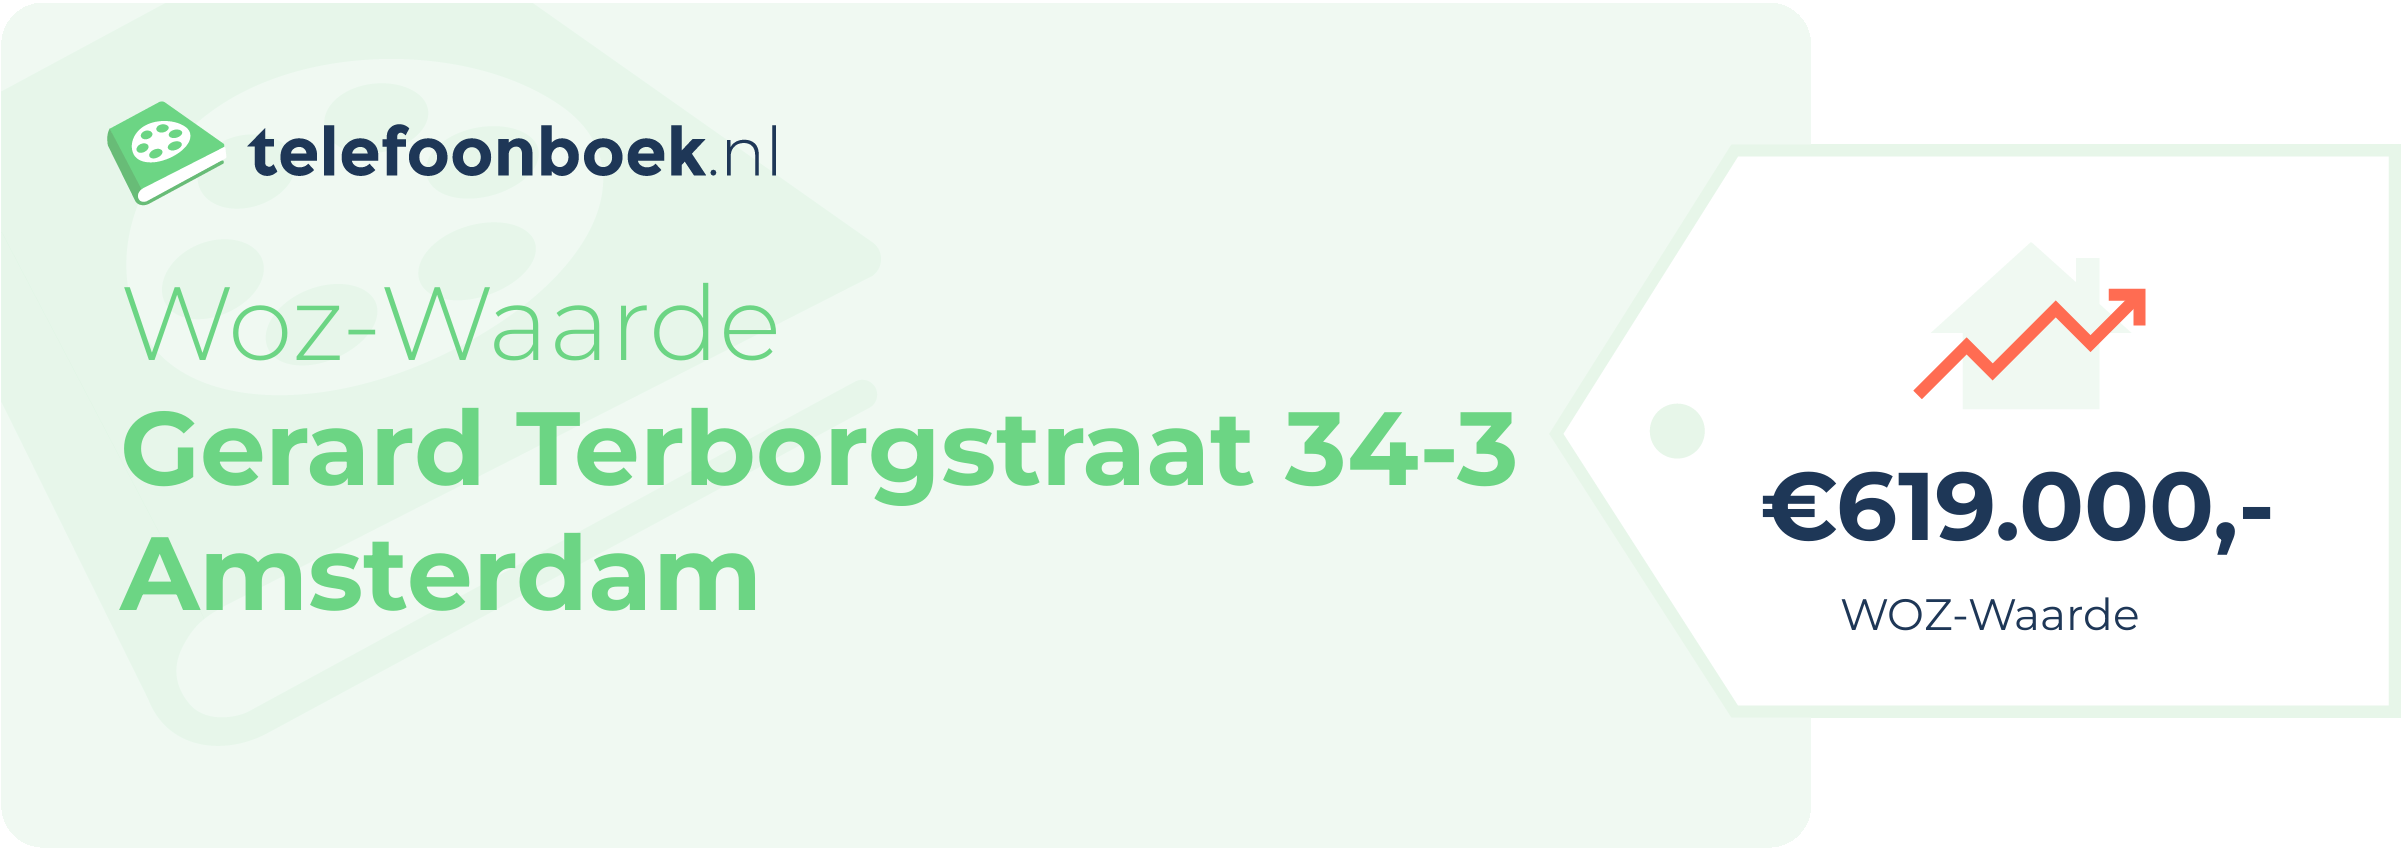 WOZ-waarde Gerard Terborgstraat 34-3 Amsterdam